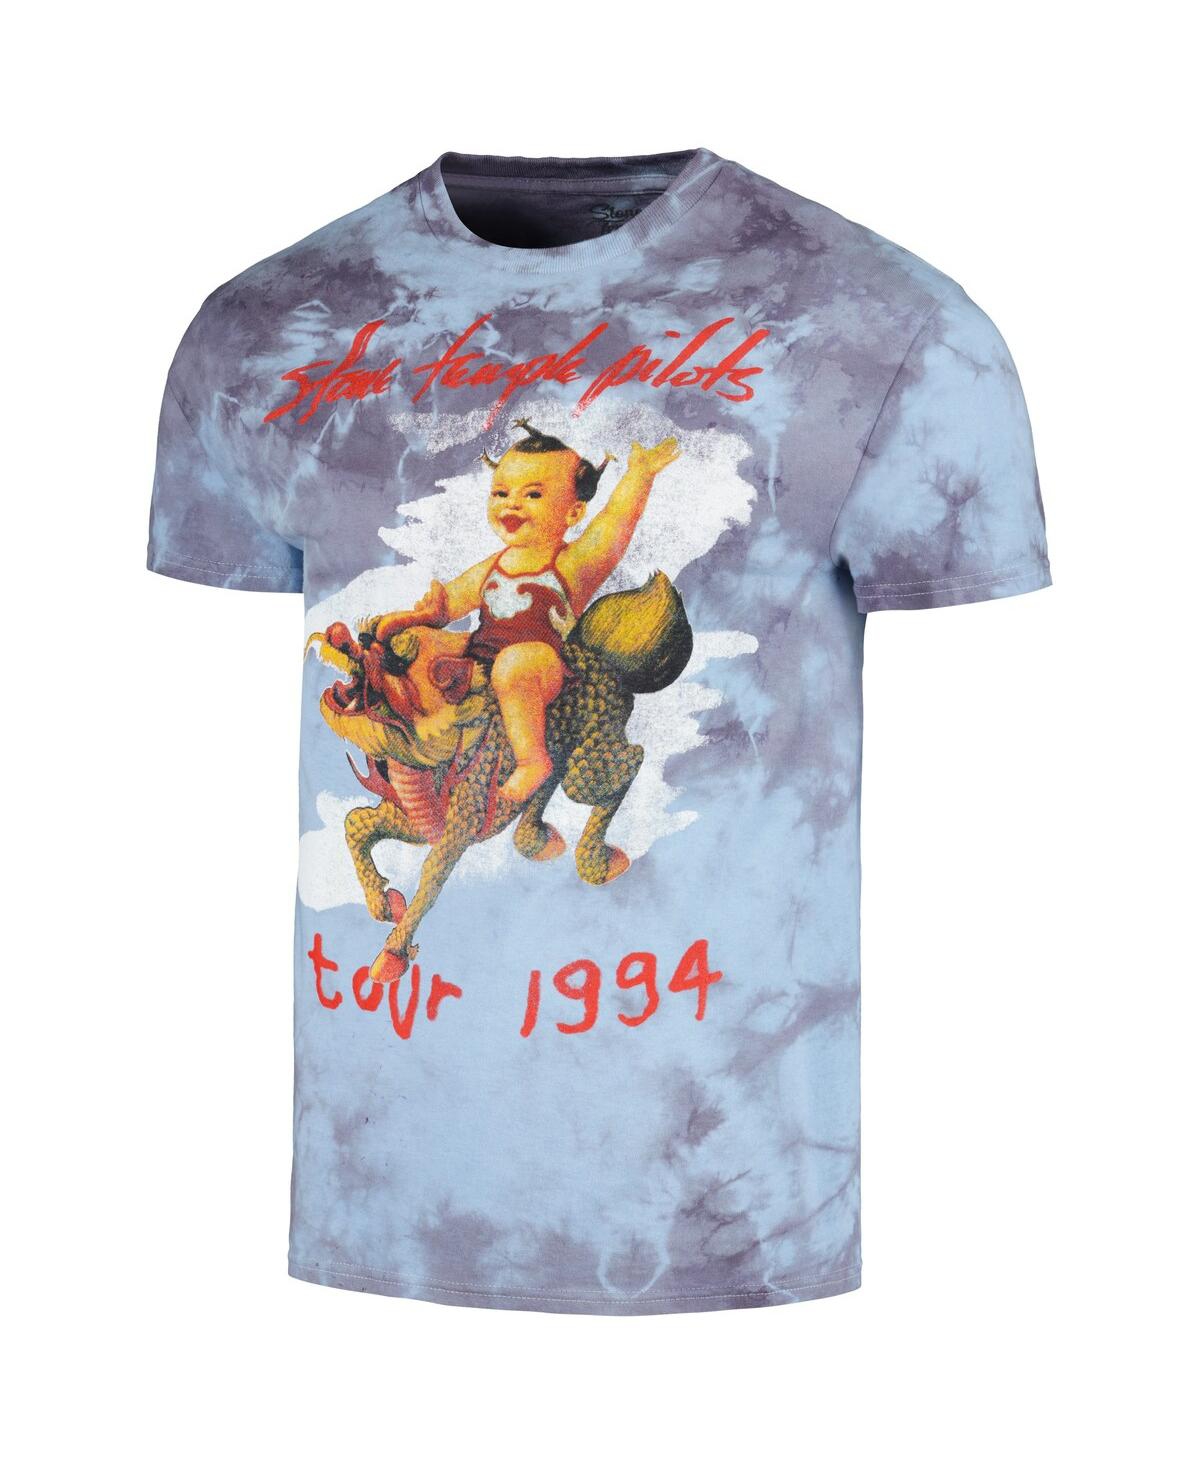 Shop Global Merch Men's Light Blue Distressed Stone Temple Pilots 1994 Tour Crystal Wash T-shirt